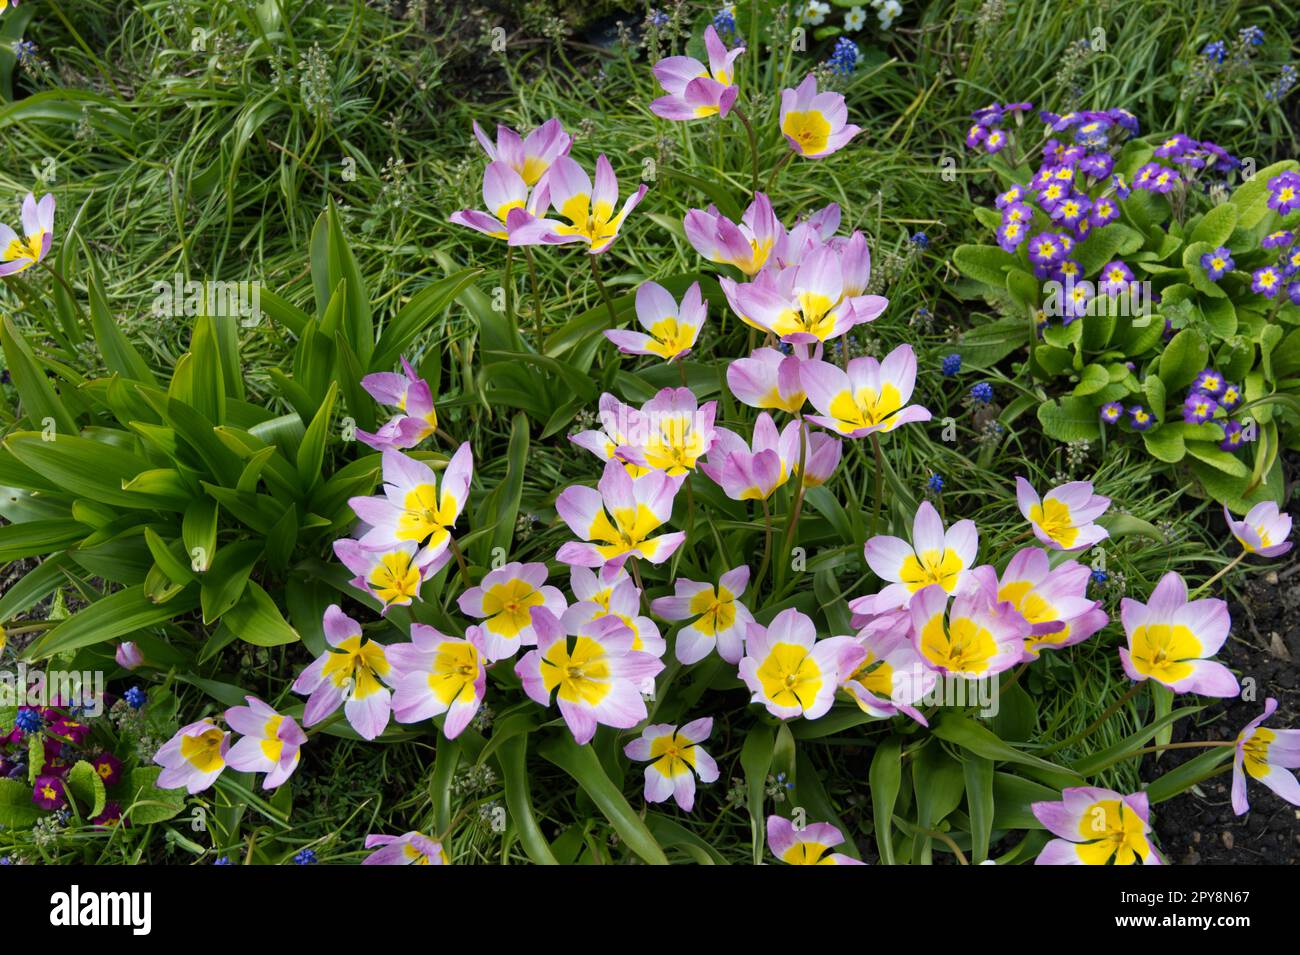 Giardino primaverile con primule miste, fogliame colchicum e fiori primaverili rosa e giallo di Tulip bakeri Lilac Wonder nel giardino britannico di aprile Foto Stock